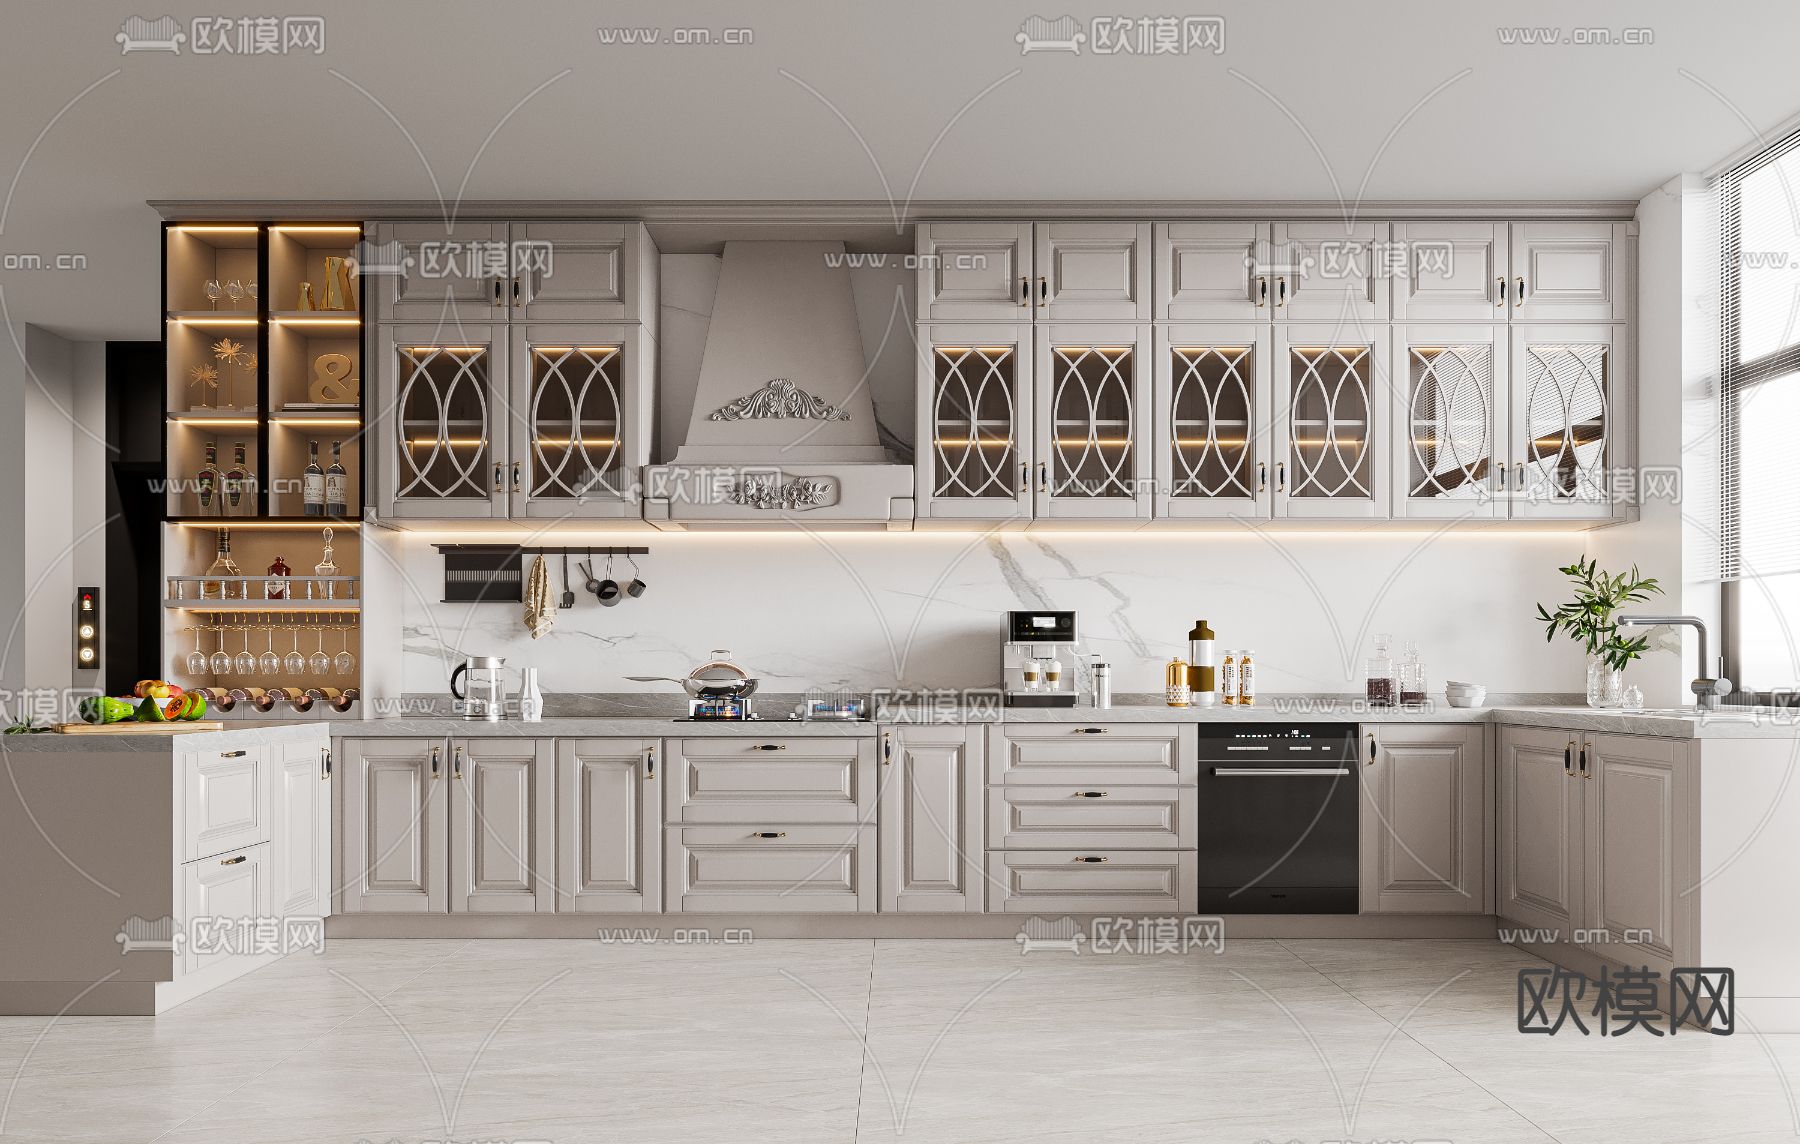 法式厨房 橱柜3d模型下载_ID14038862_3dmax免费模型-欧模网